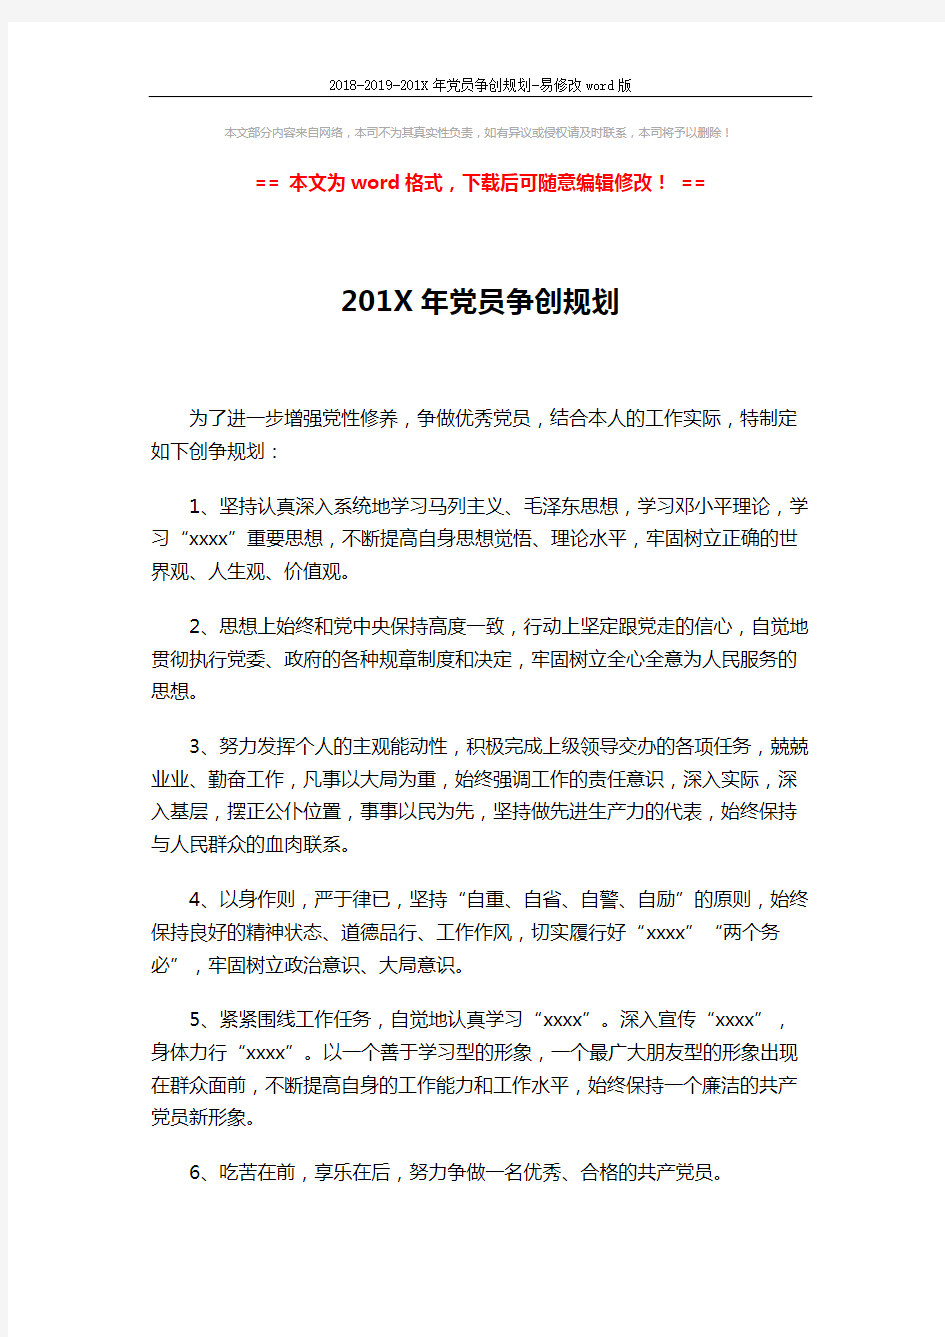 2018-2019-201X年党员争创规划-易修改word版 (2页)